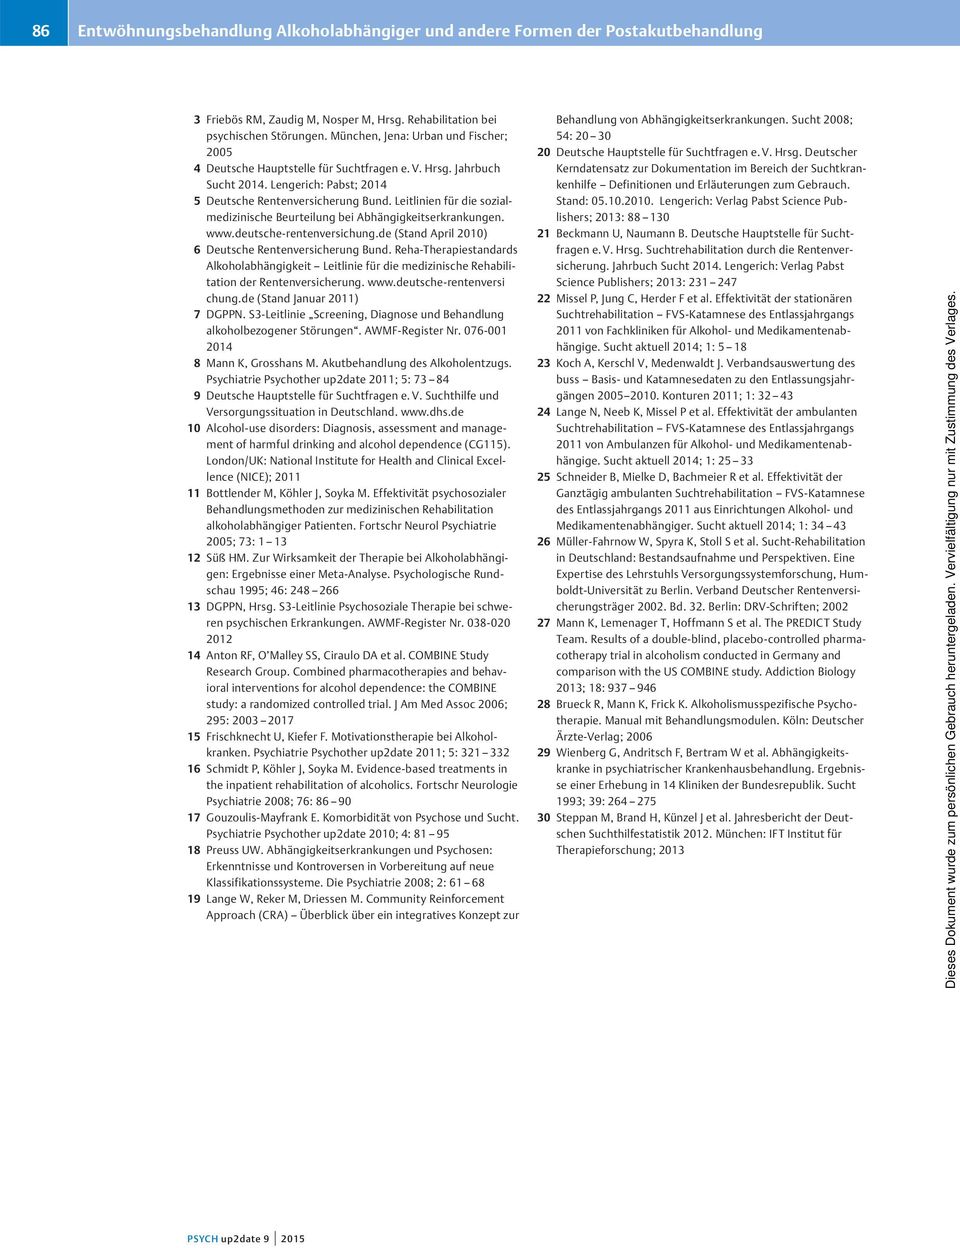 Leitlinien für die sozialmedizinische Beurteilung bei Abhängigkeitserkrankungen. www.deutsche-rentenversichung.de (Stand April 2010) 6 Deutsche Rentenversicherung Bund.